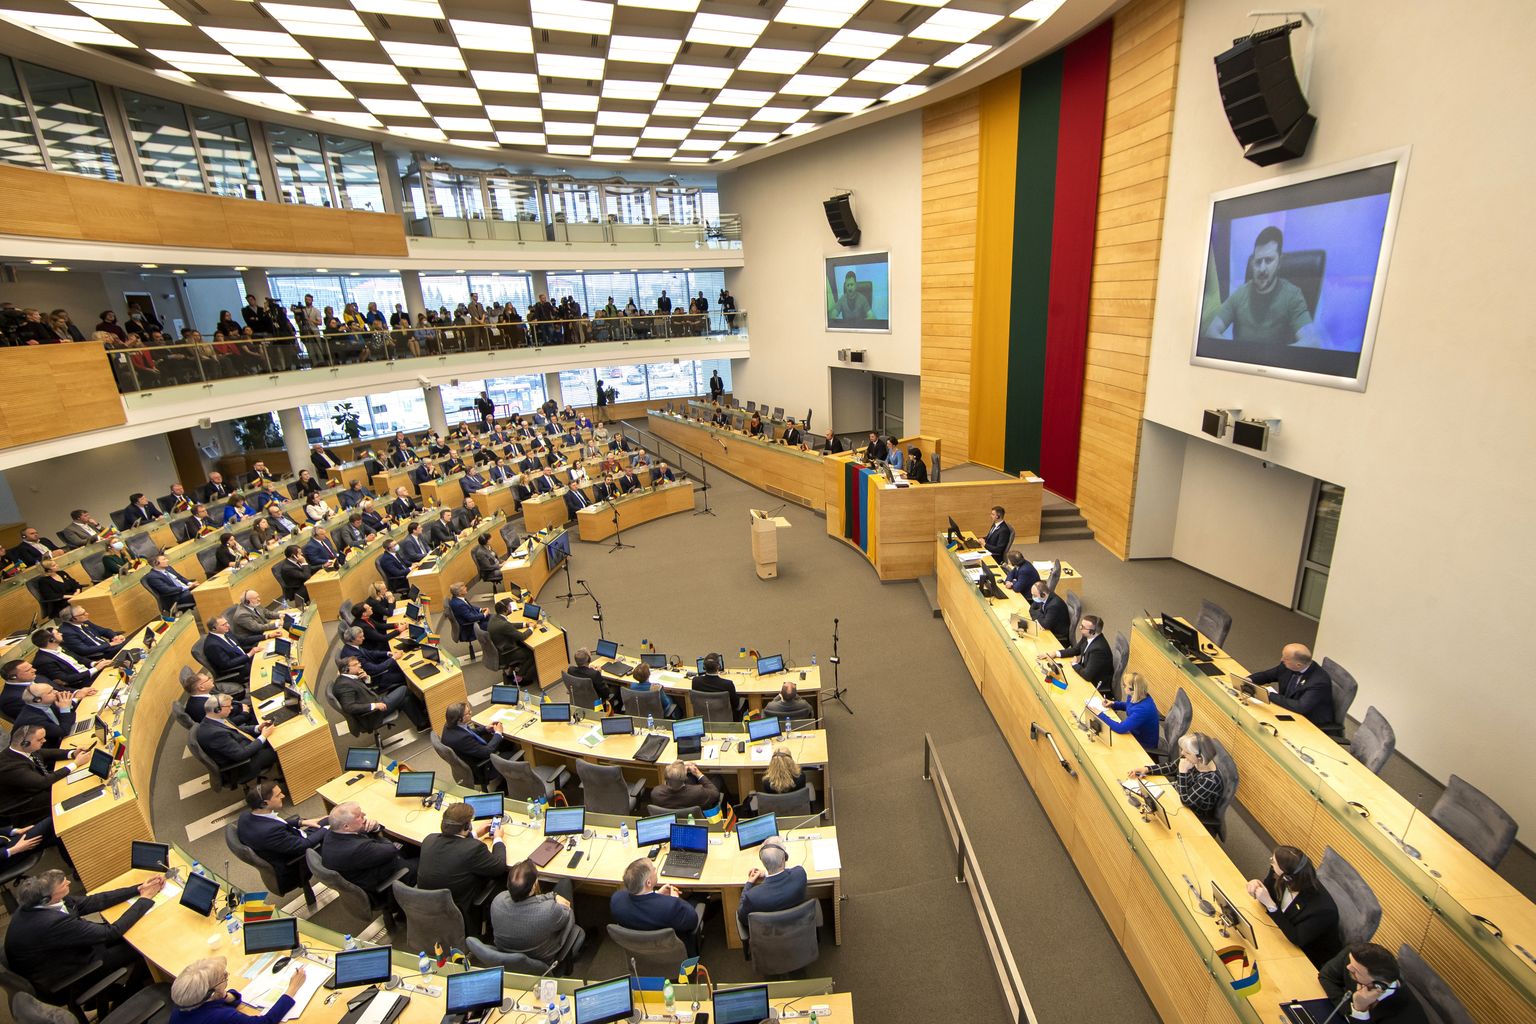 Leedu parlament. Foto on illustratiivne.